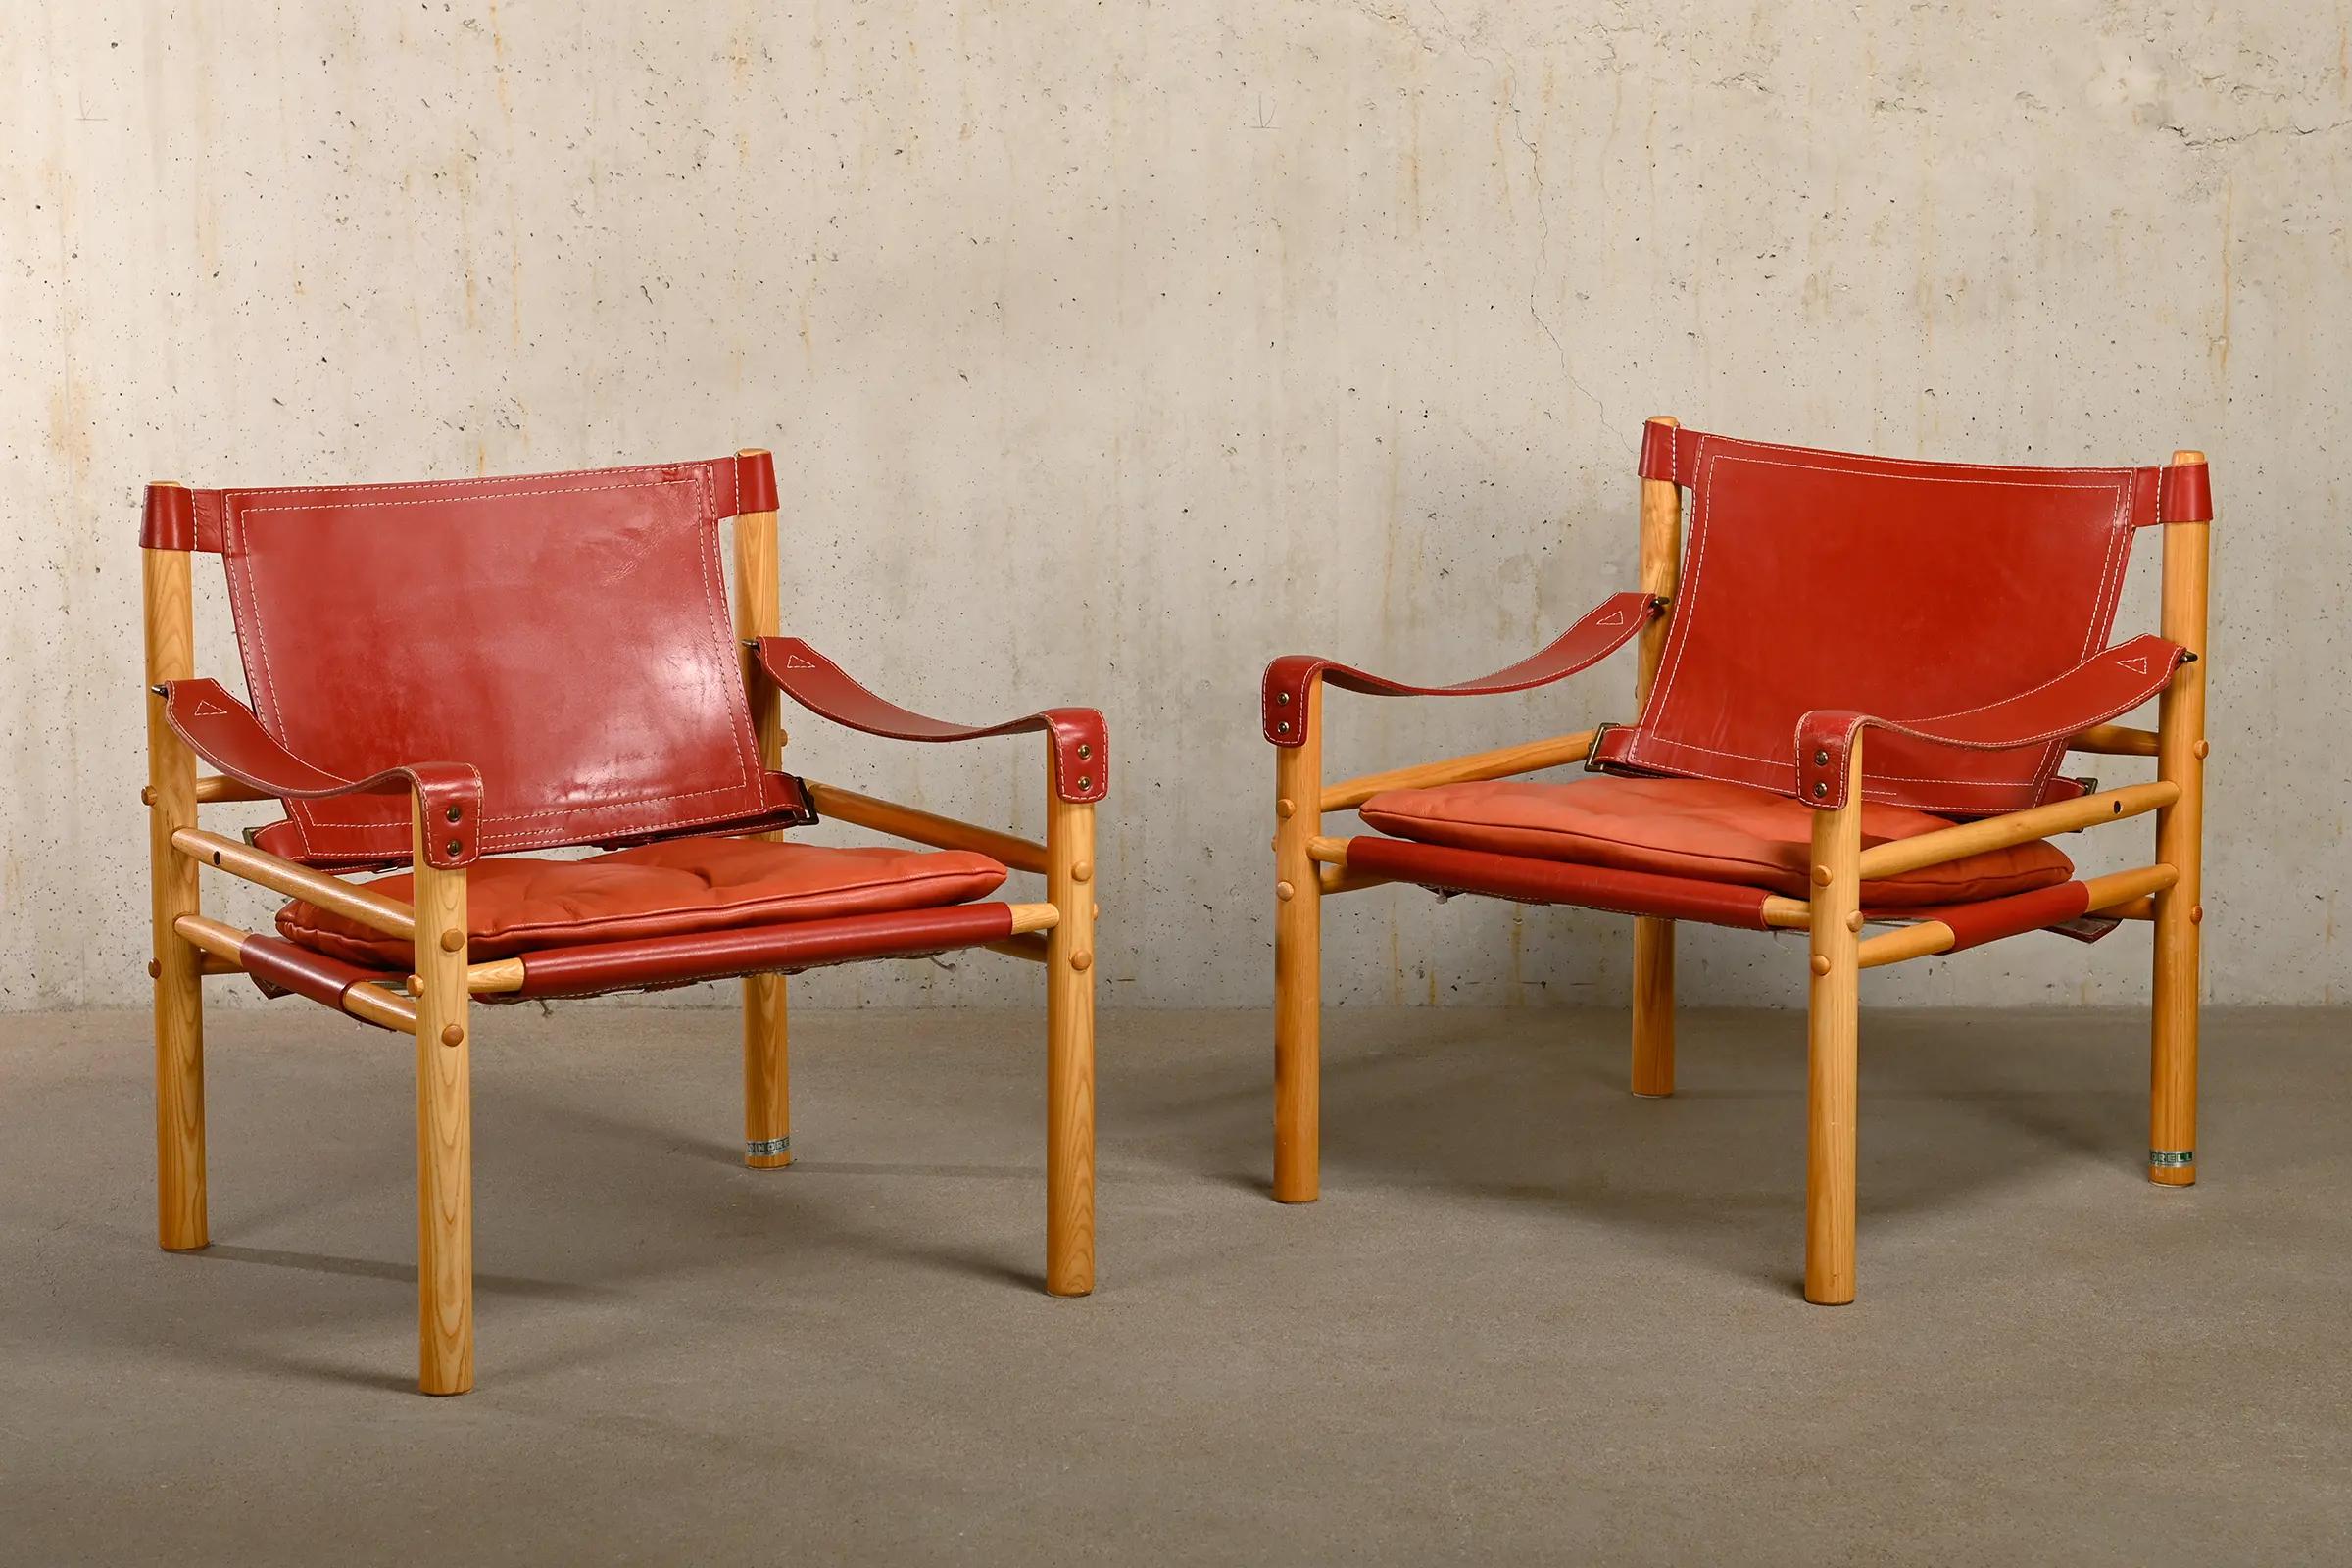 Tolles Paar Sirocco Safari Lounge Chairs, entworfen von Arne Norell und hergestellt von Norell Möbel AB in Schweden. Hell patinierte Eschenholzrahmen mit den originalen Lederkissen in schönem roten Leder. Alle in sehr gutem Zustand. Unterzeichnet